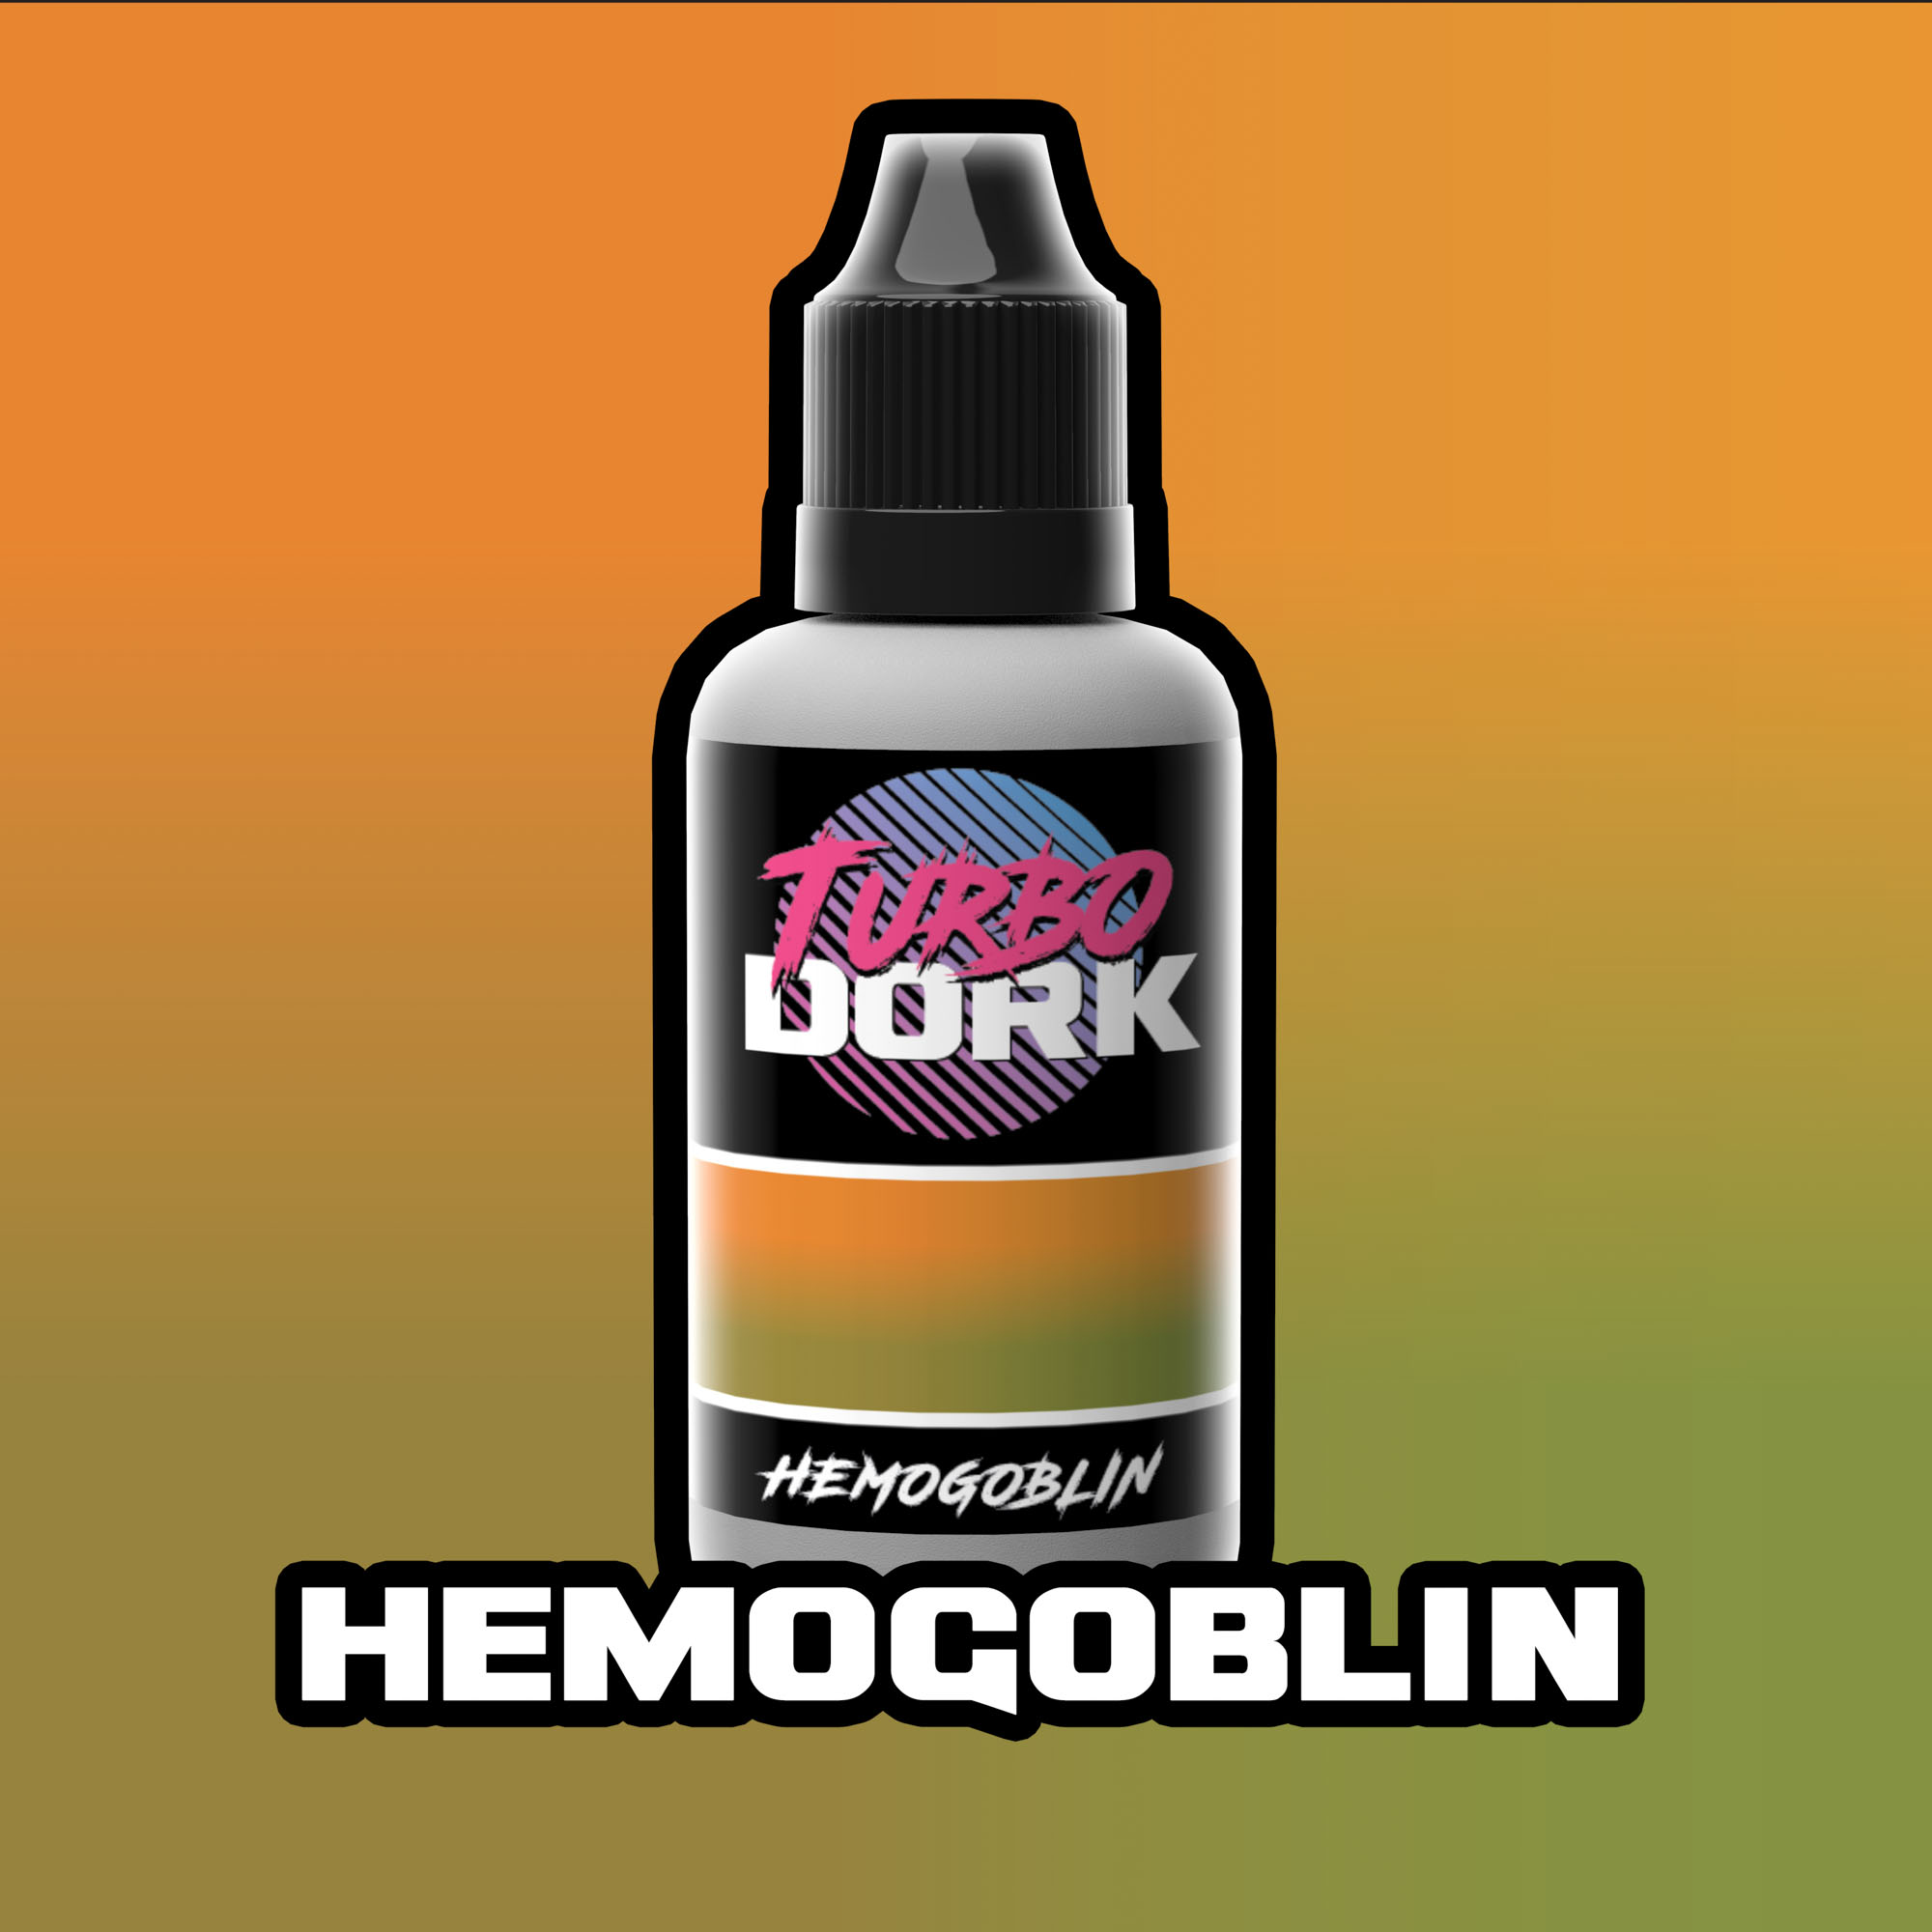 Turbo Dork: Hemogoblin (Turboshift ) 